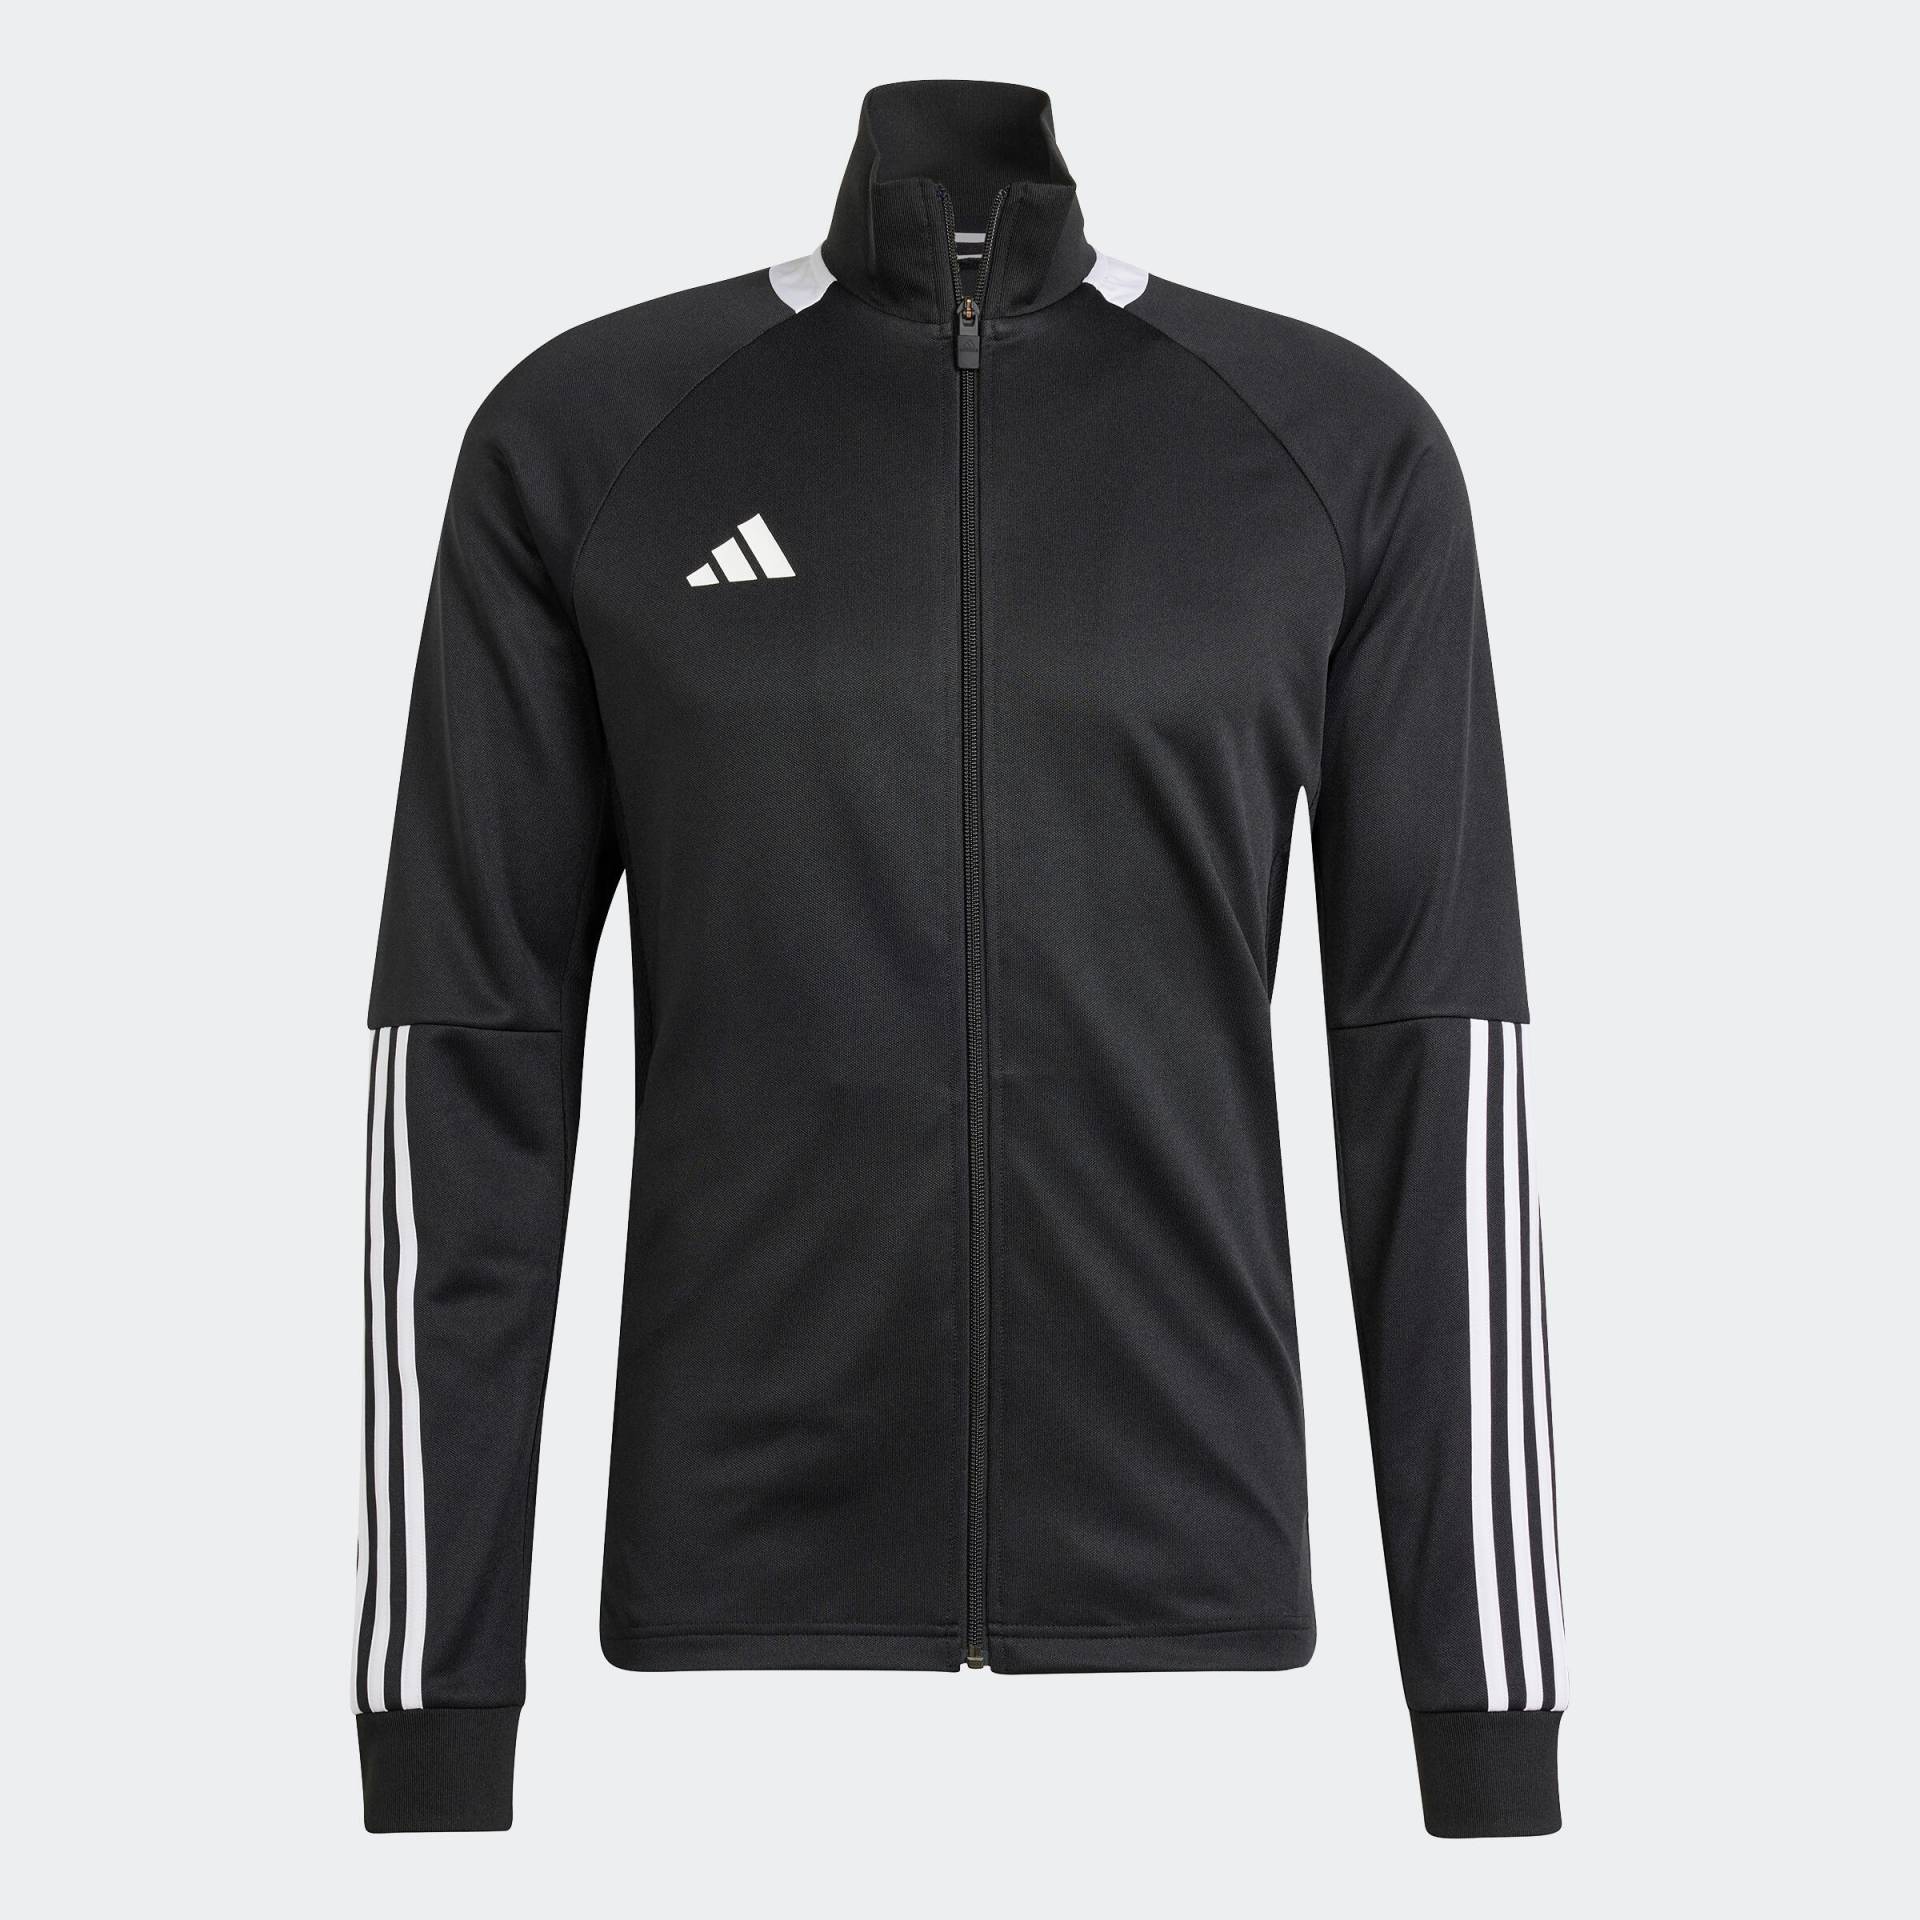 Damen/Herren Fussball Trainingsjacke - ADIDAS Sereno schwarz von Adidas